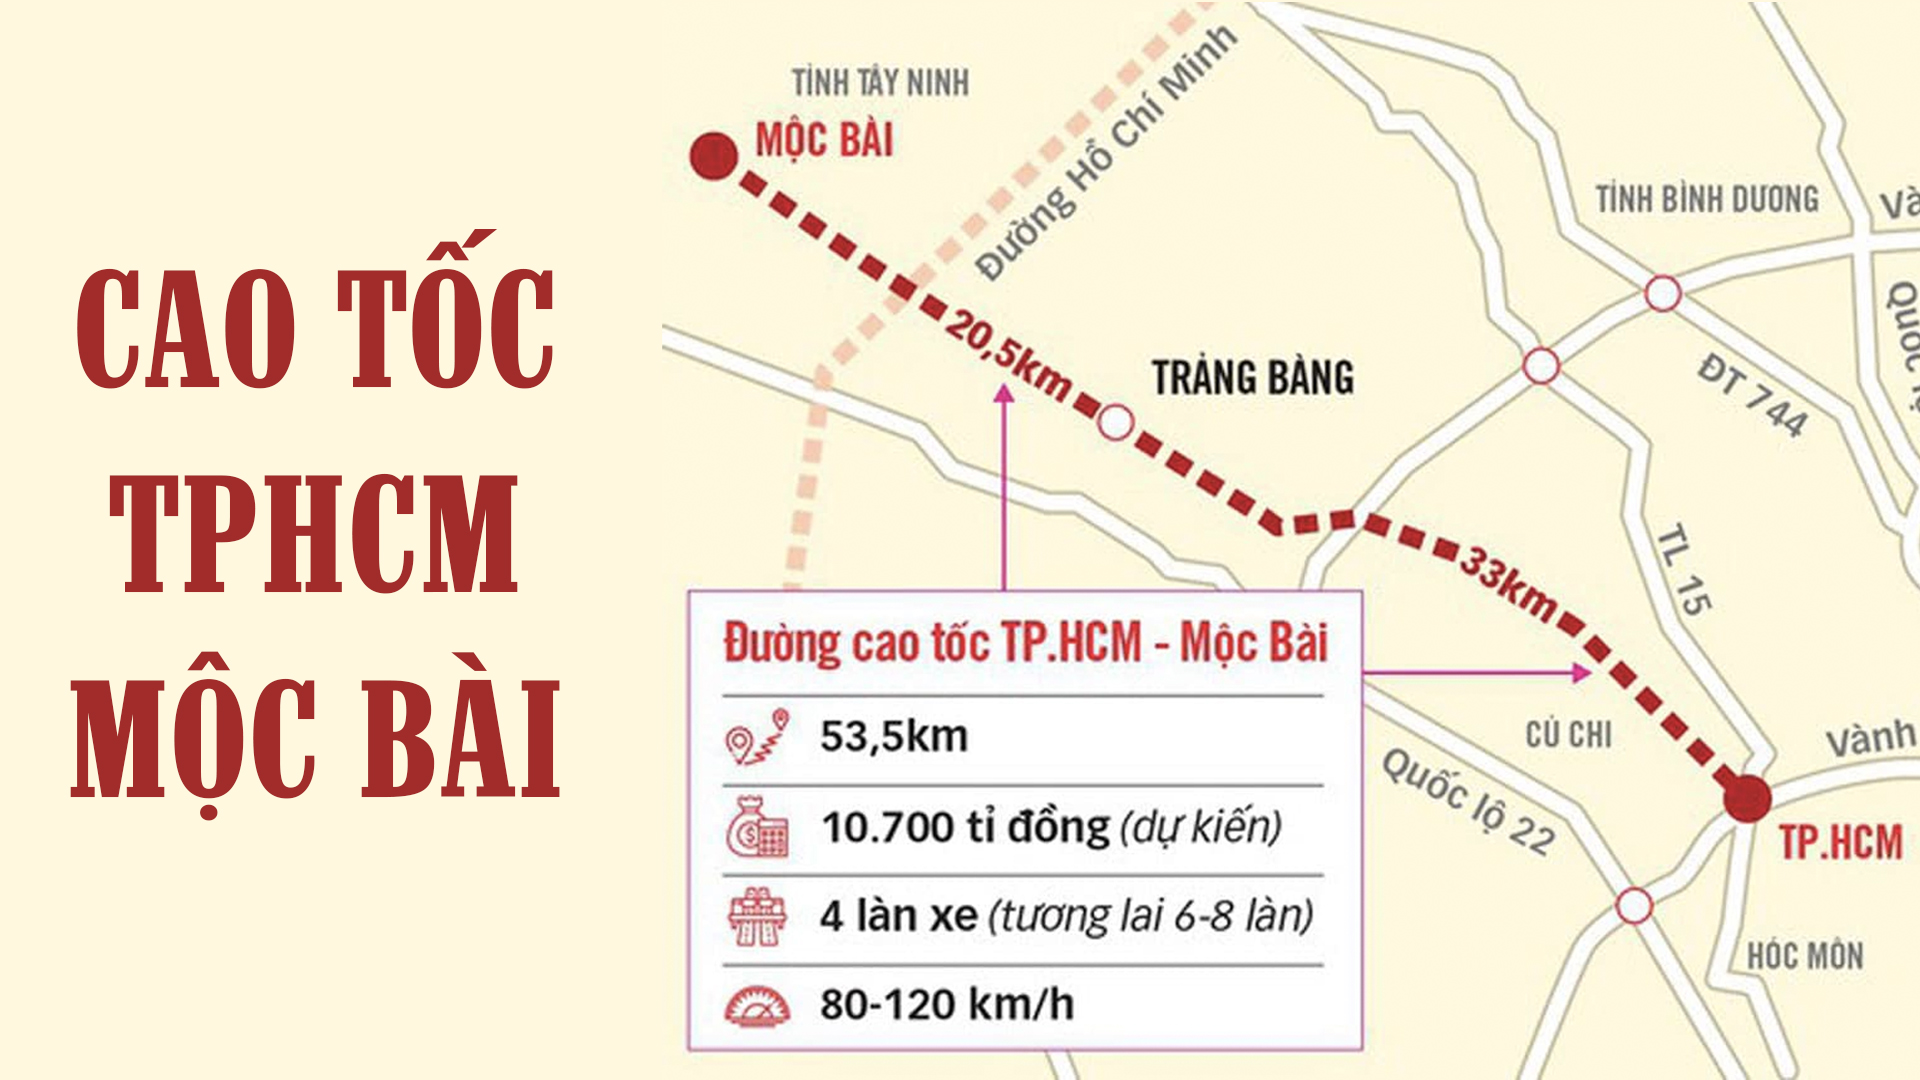 Cao tốc TPHCM Mộc Bài sắp khởi công, bước chuyển mạnh mẽ của ngành bất động sản tỉnh Tây Ninh